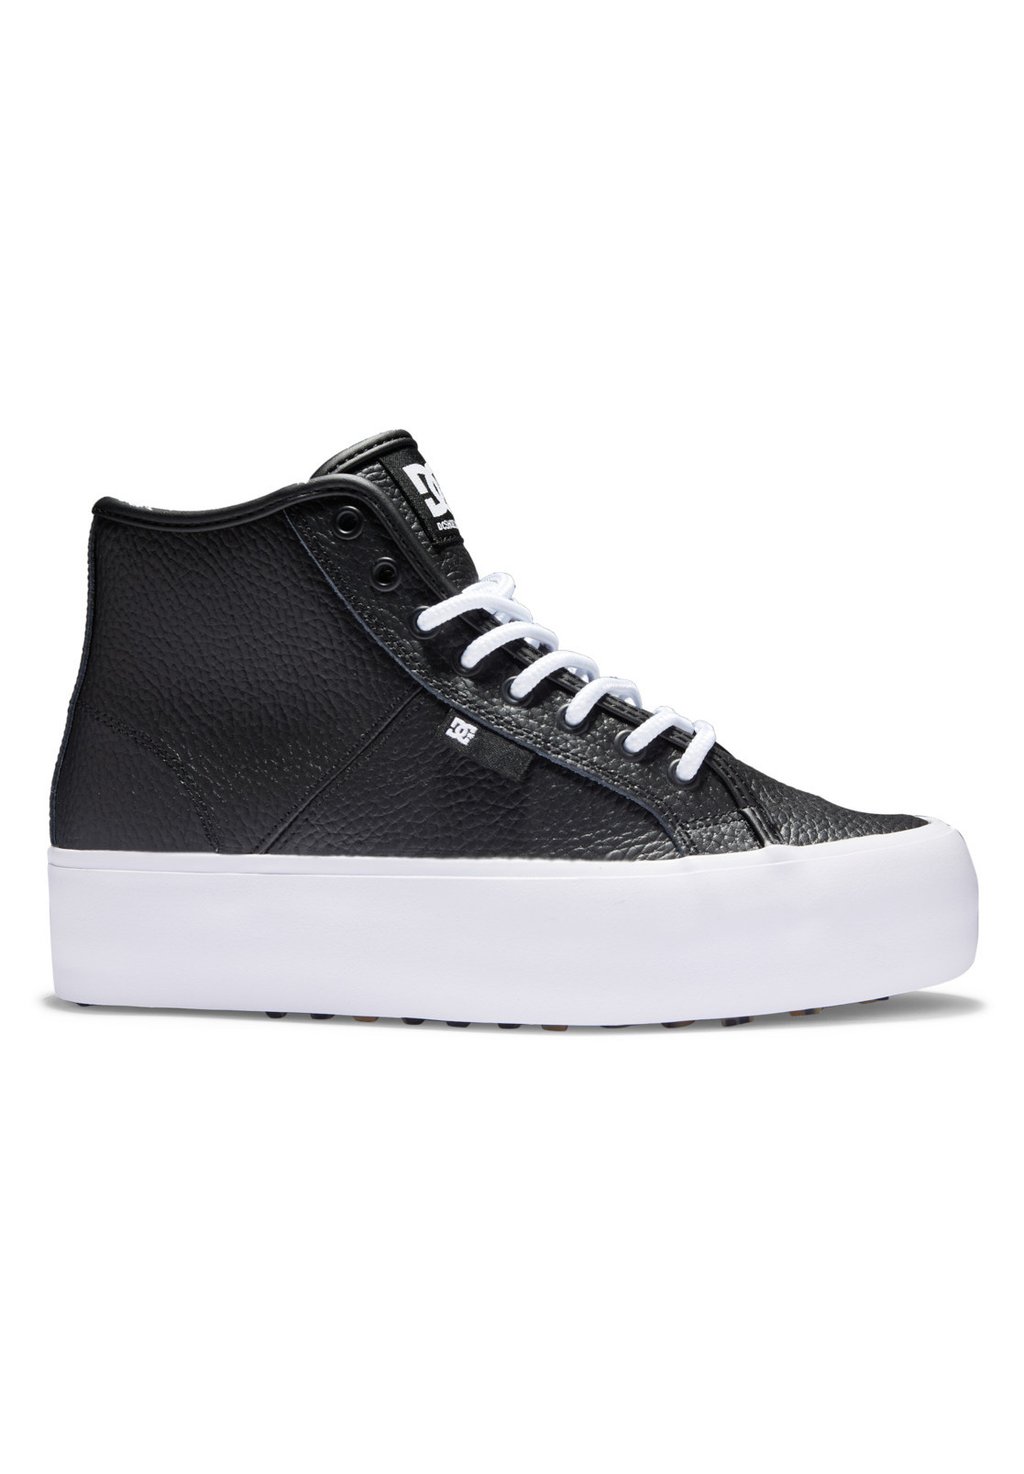 Высокие кроссовки DC Shoes MANUAL, цвет black white кроссовки dc shoes manual unisex white